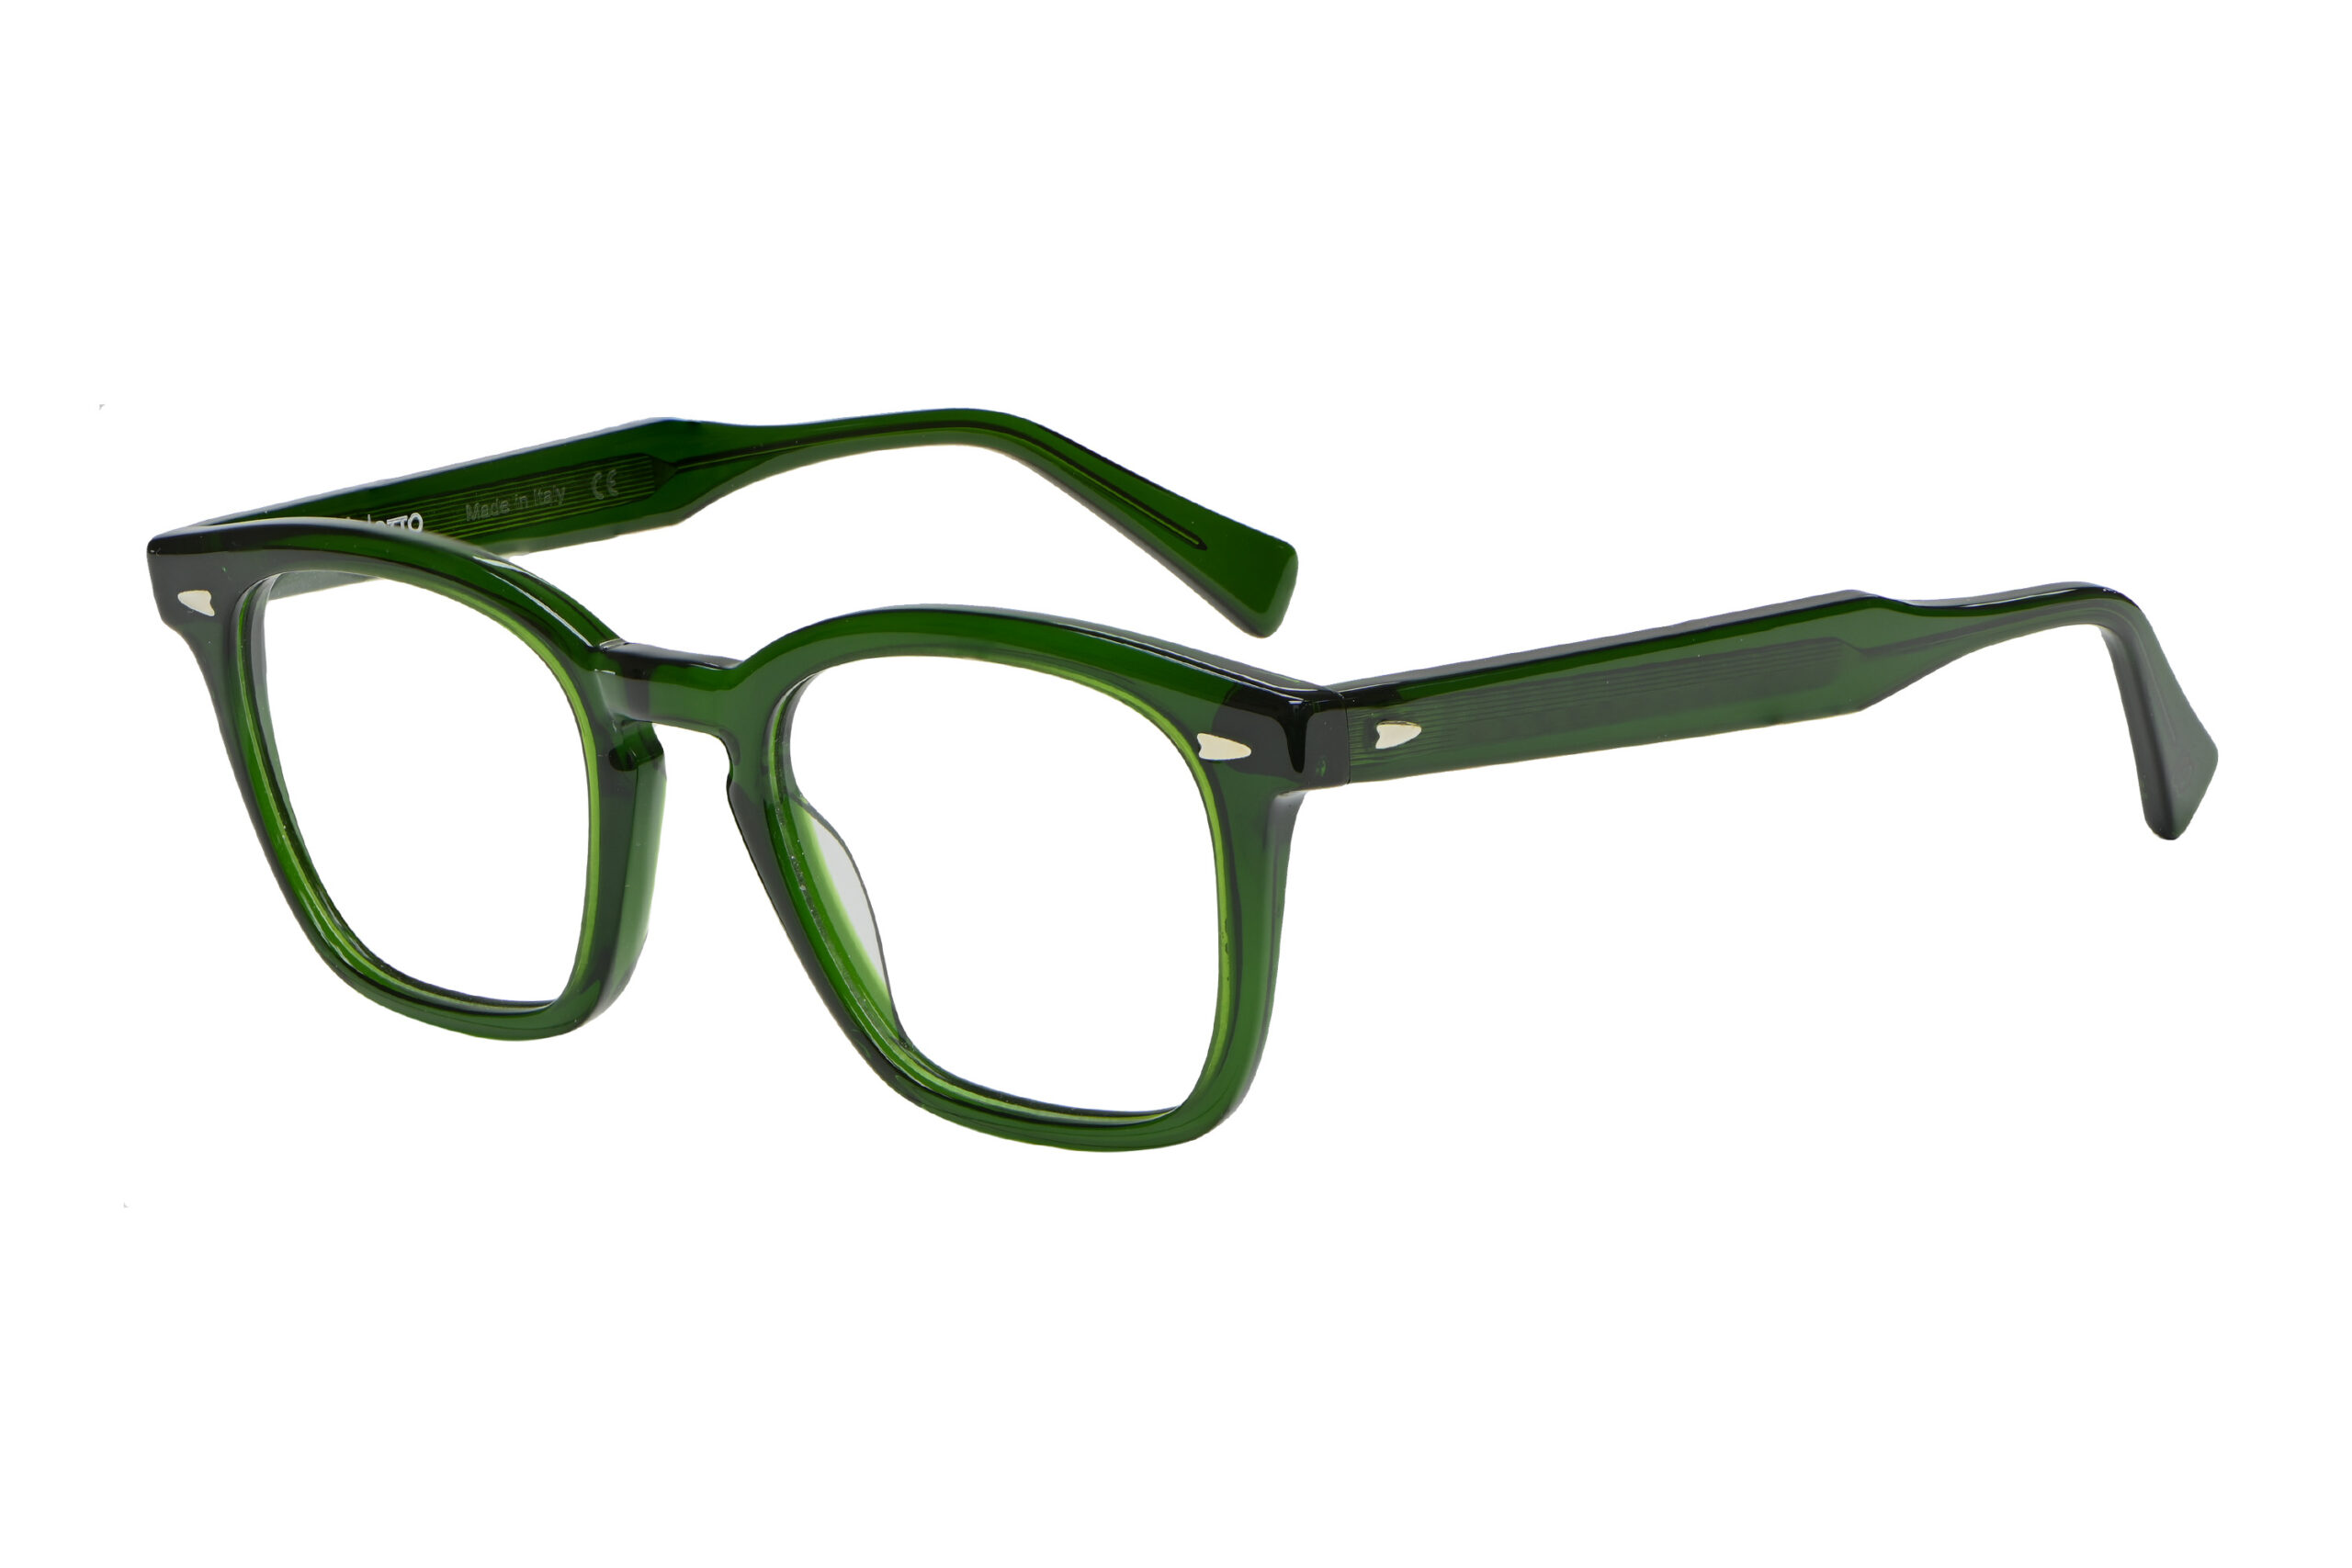 DL 33 c.8005 – Moss green